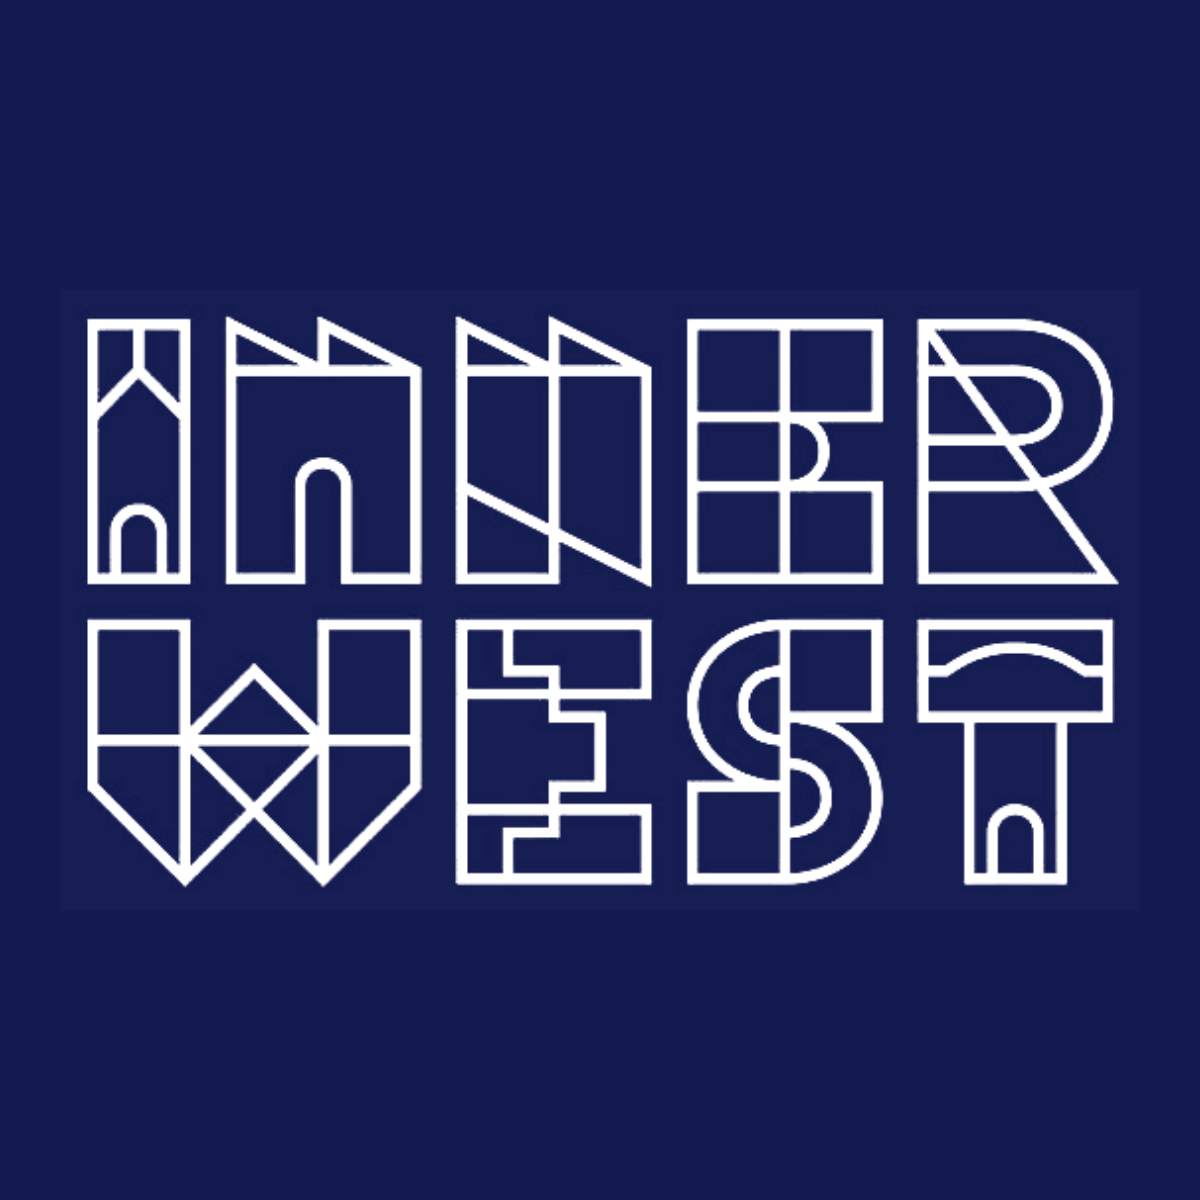 Innerwest logo blue background (1)